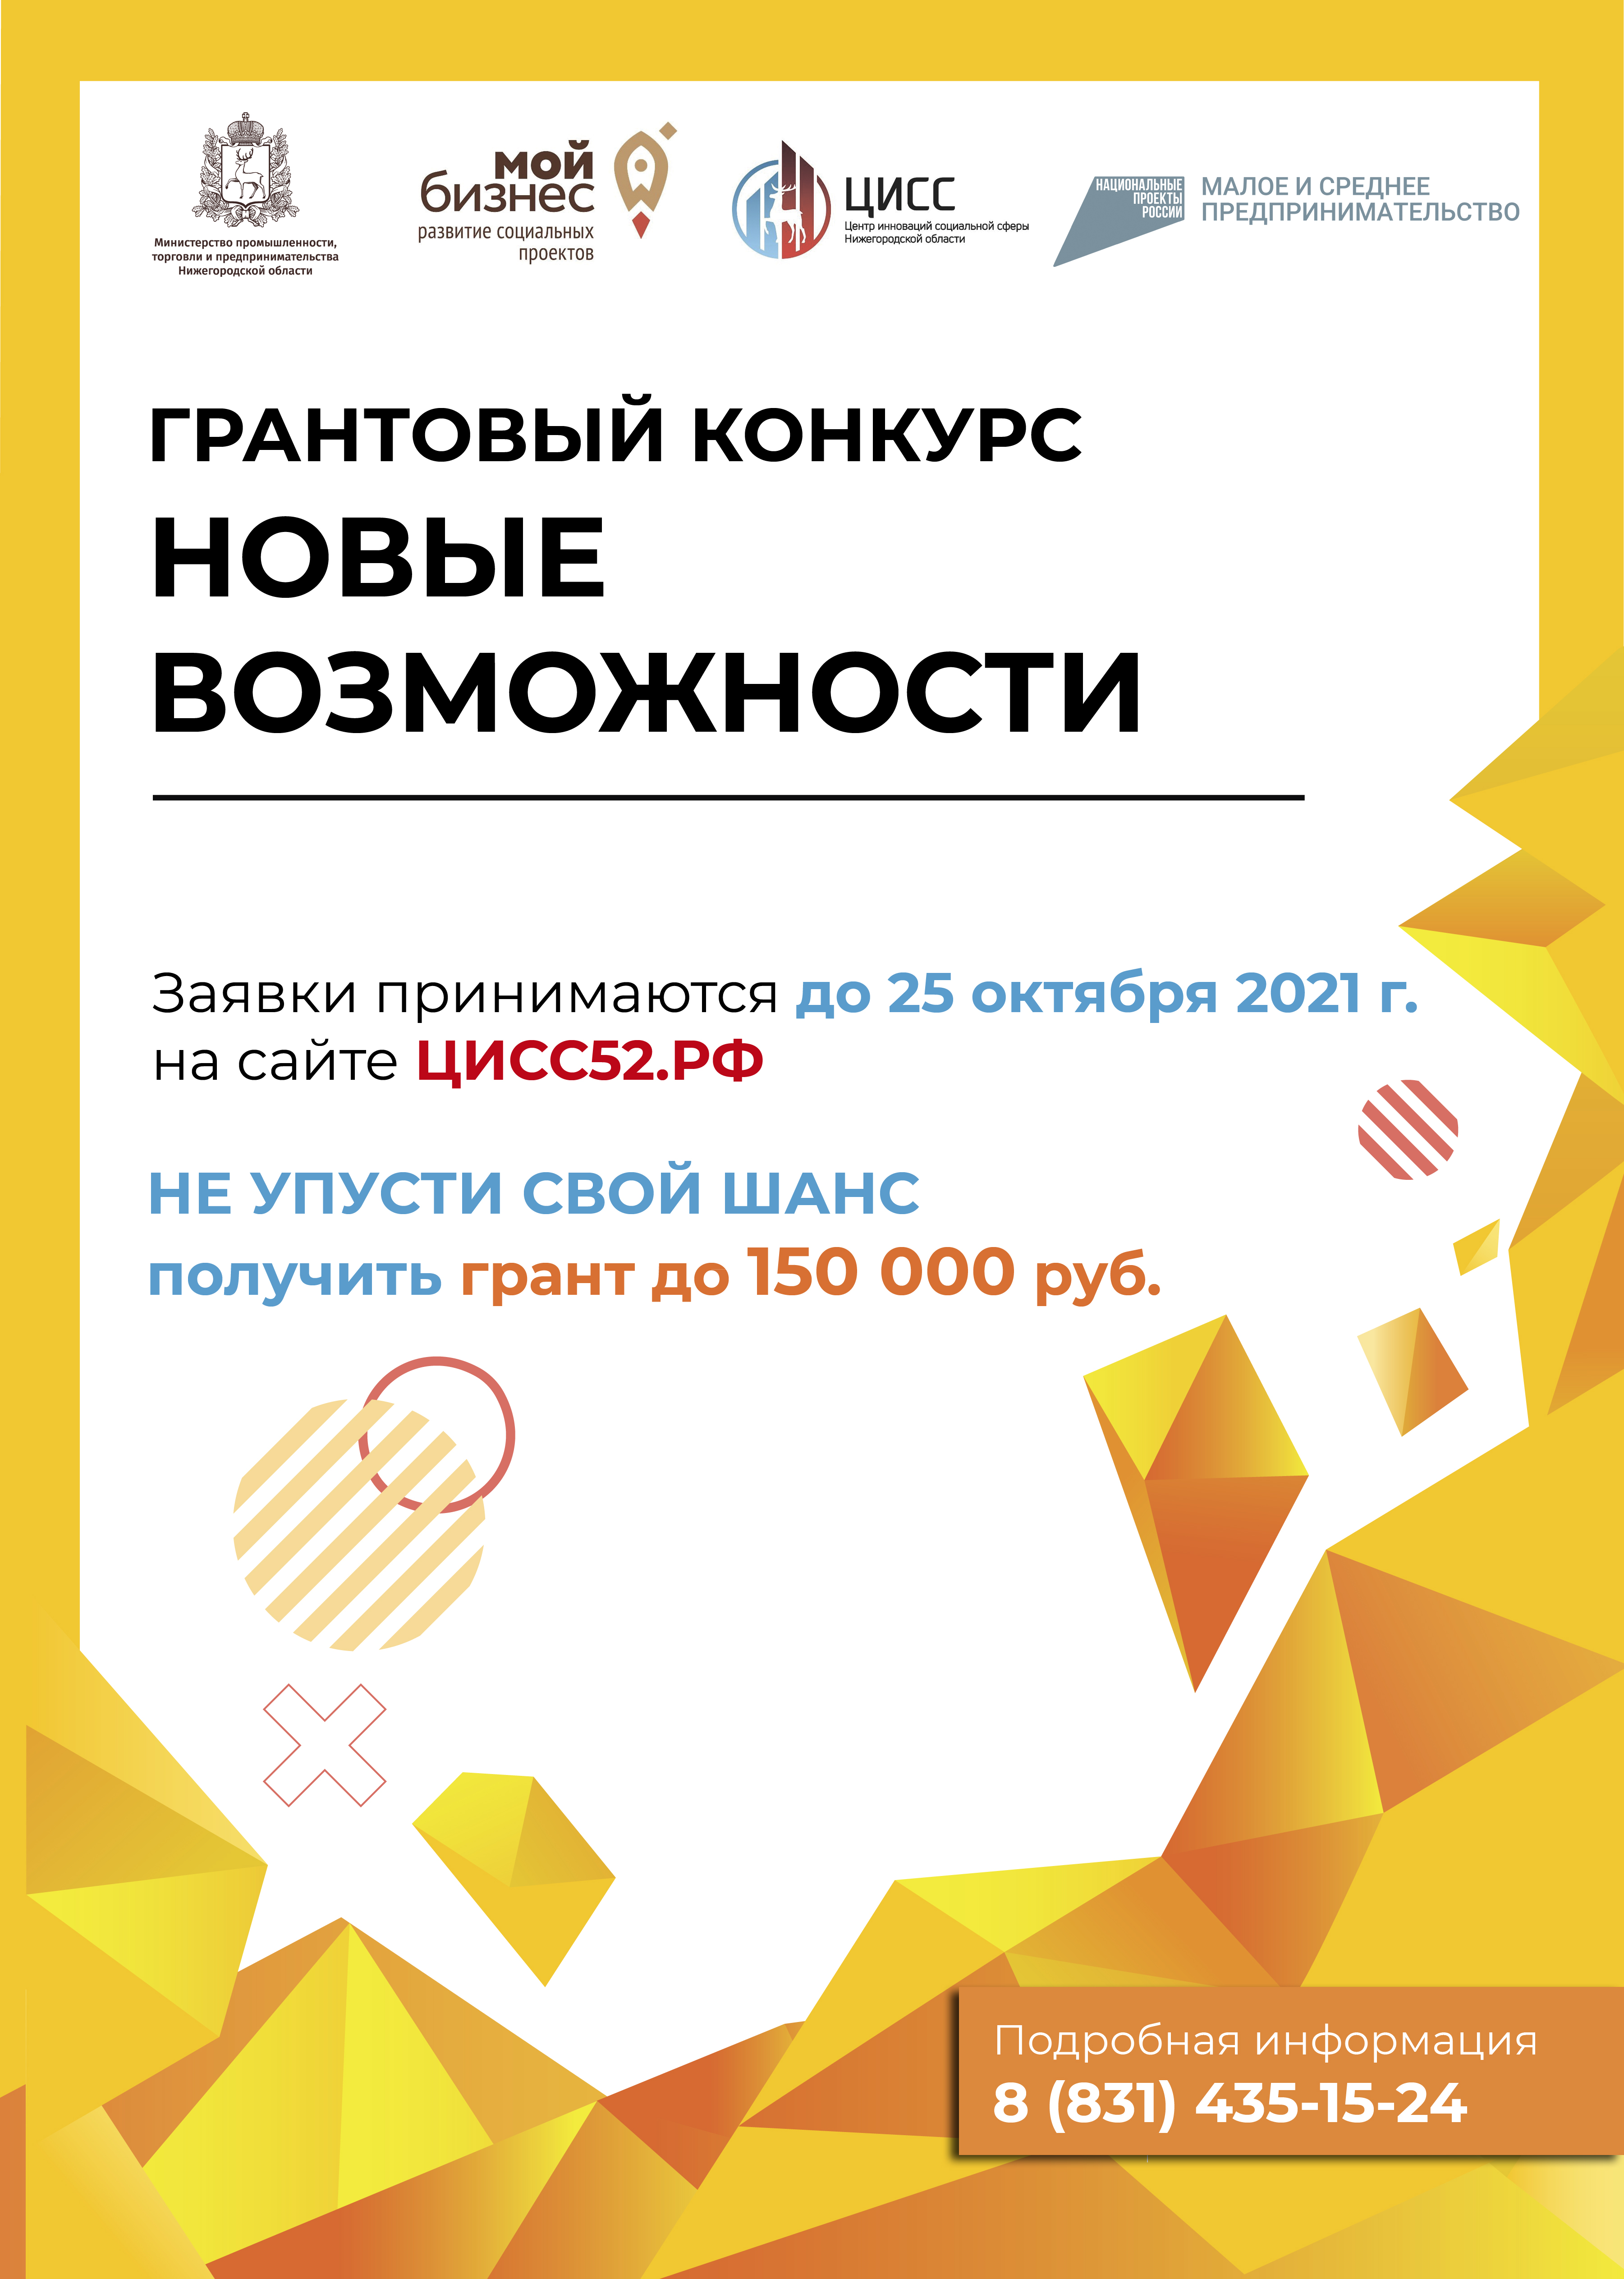 В Нижегородской области начался прием заявок на участие в конкурсе «Новые возможности»